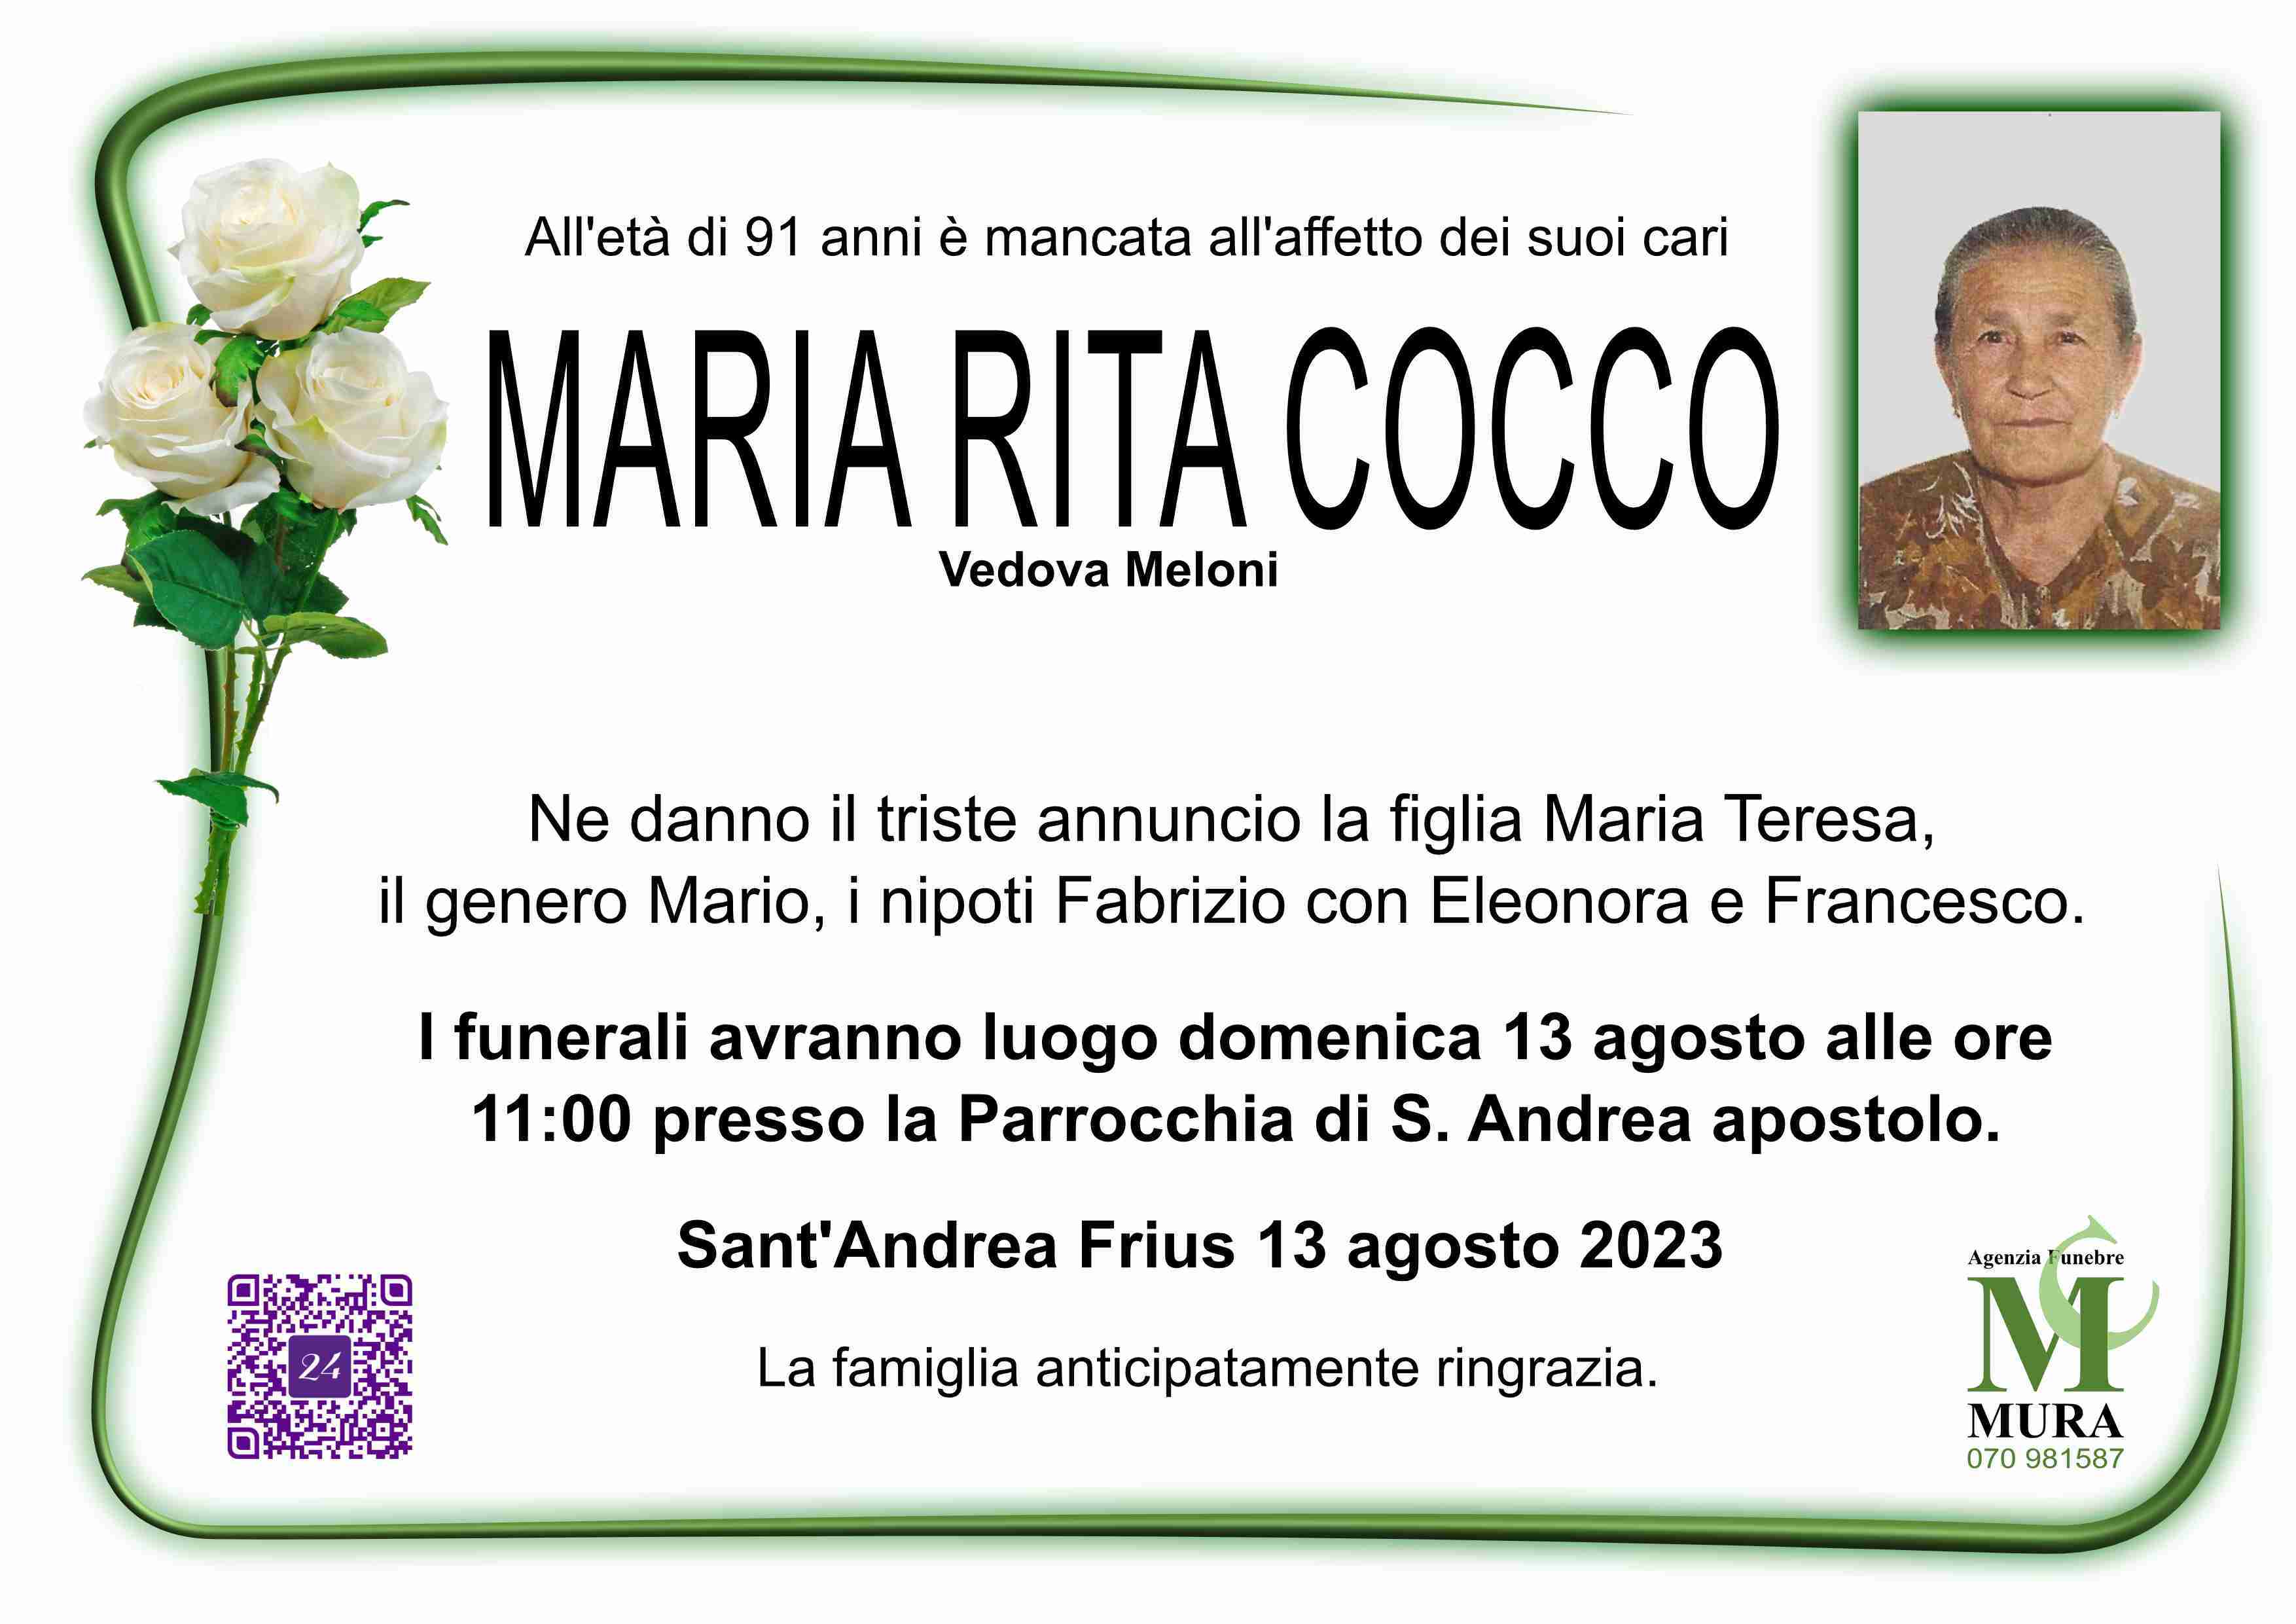 Maria Rita Cocco